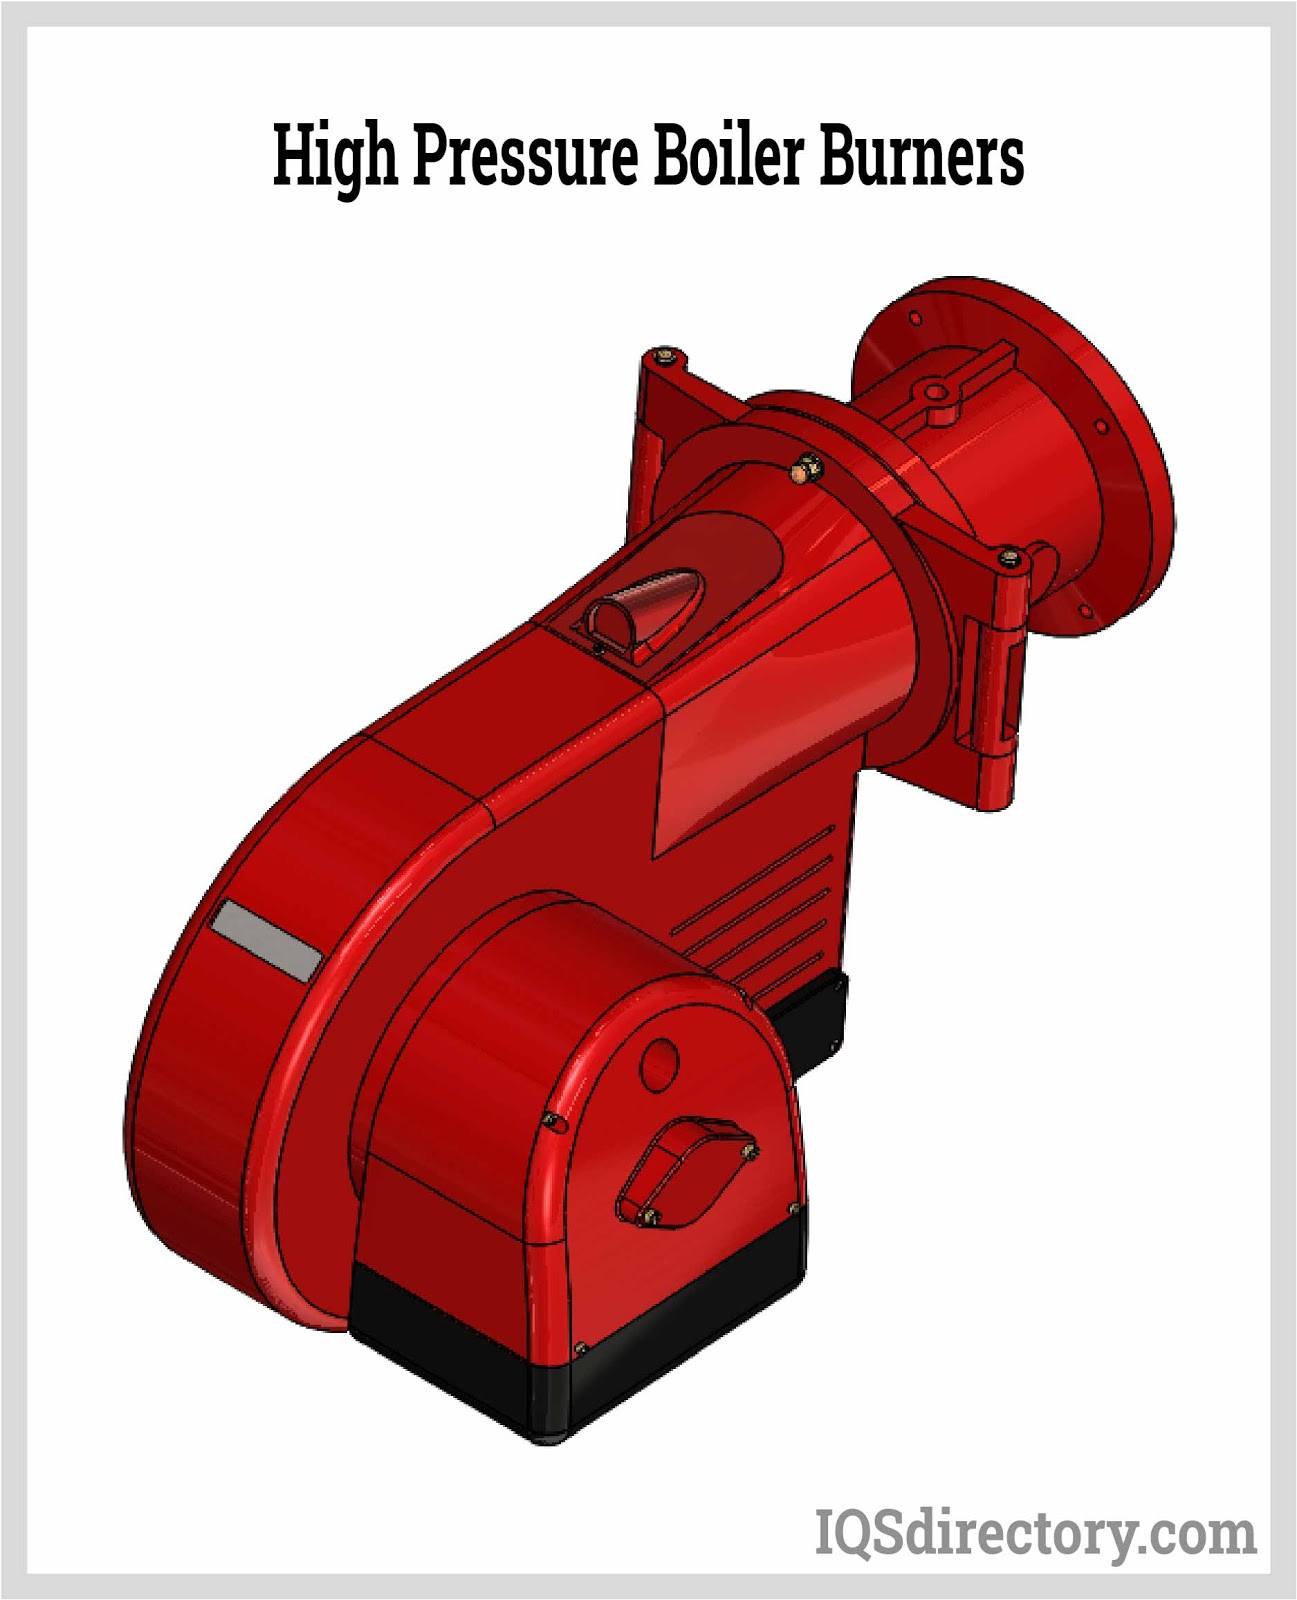 High Pressure Boiler Burners